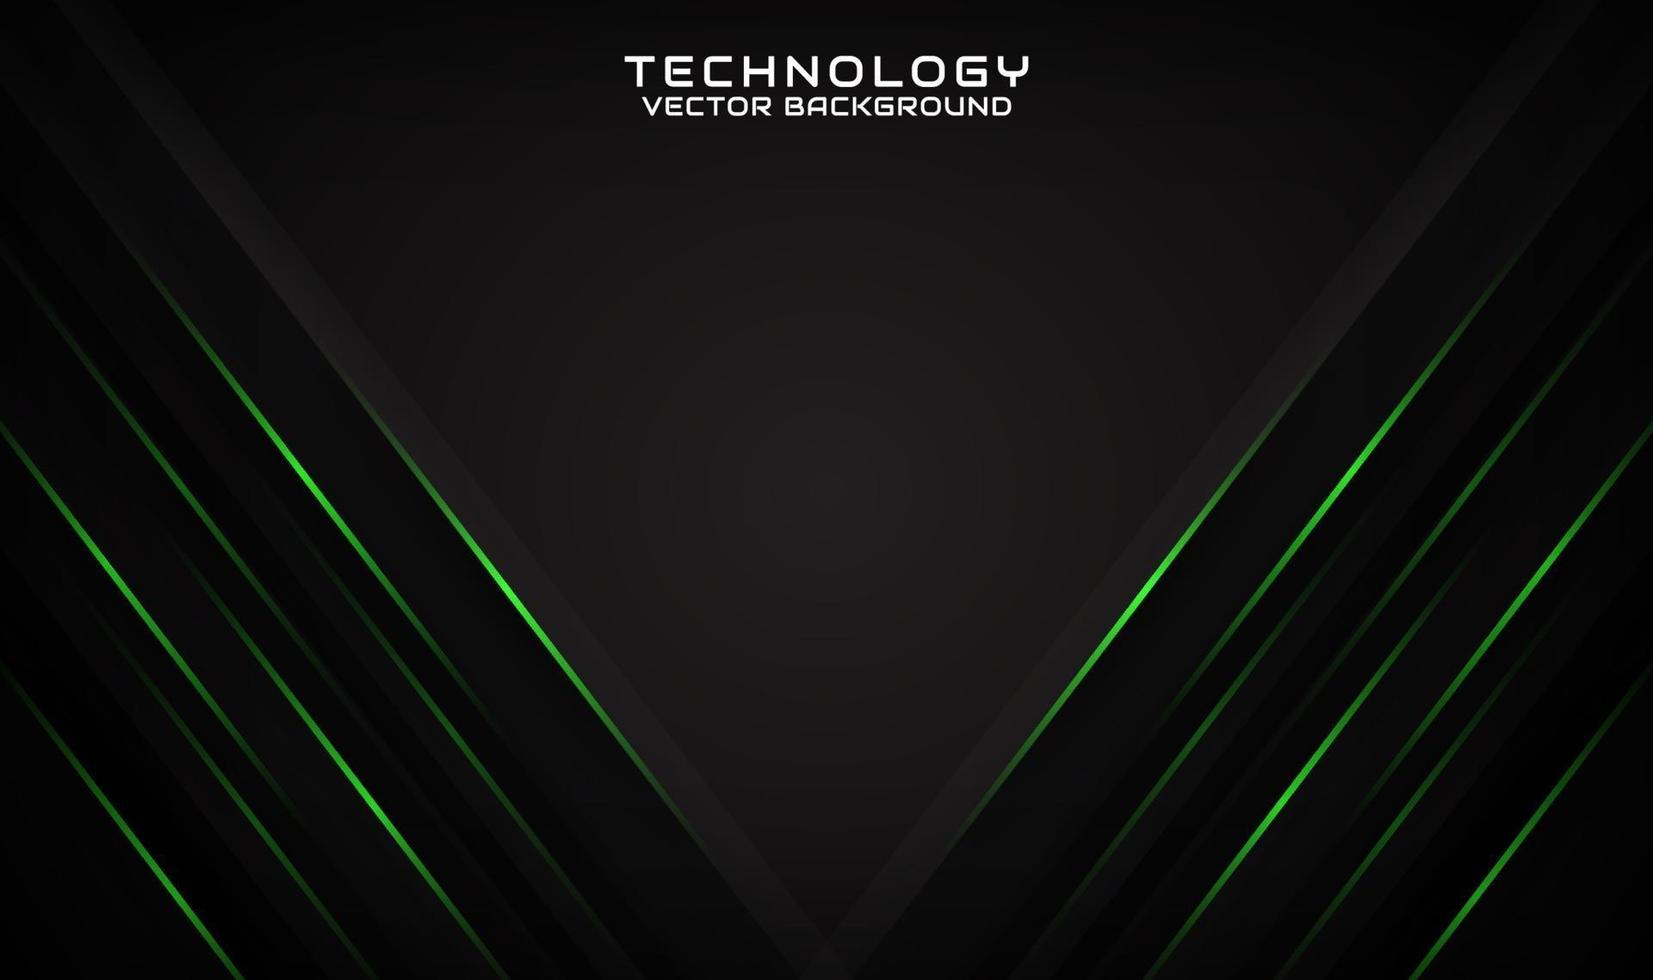 Fundo de tecnologia 3d preto abstrato com linhas verdes geométricas vetor